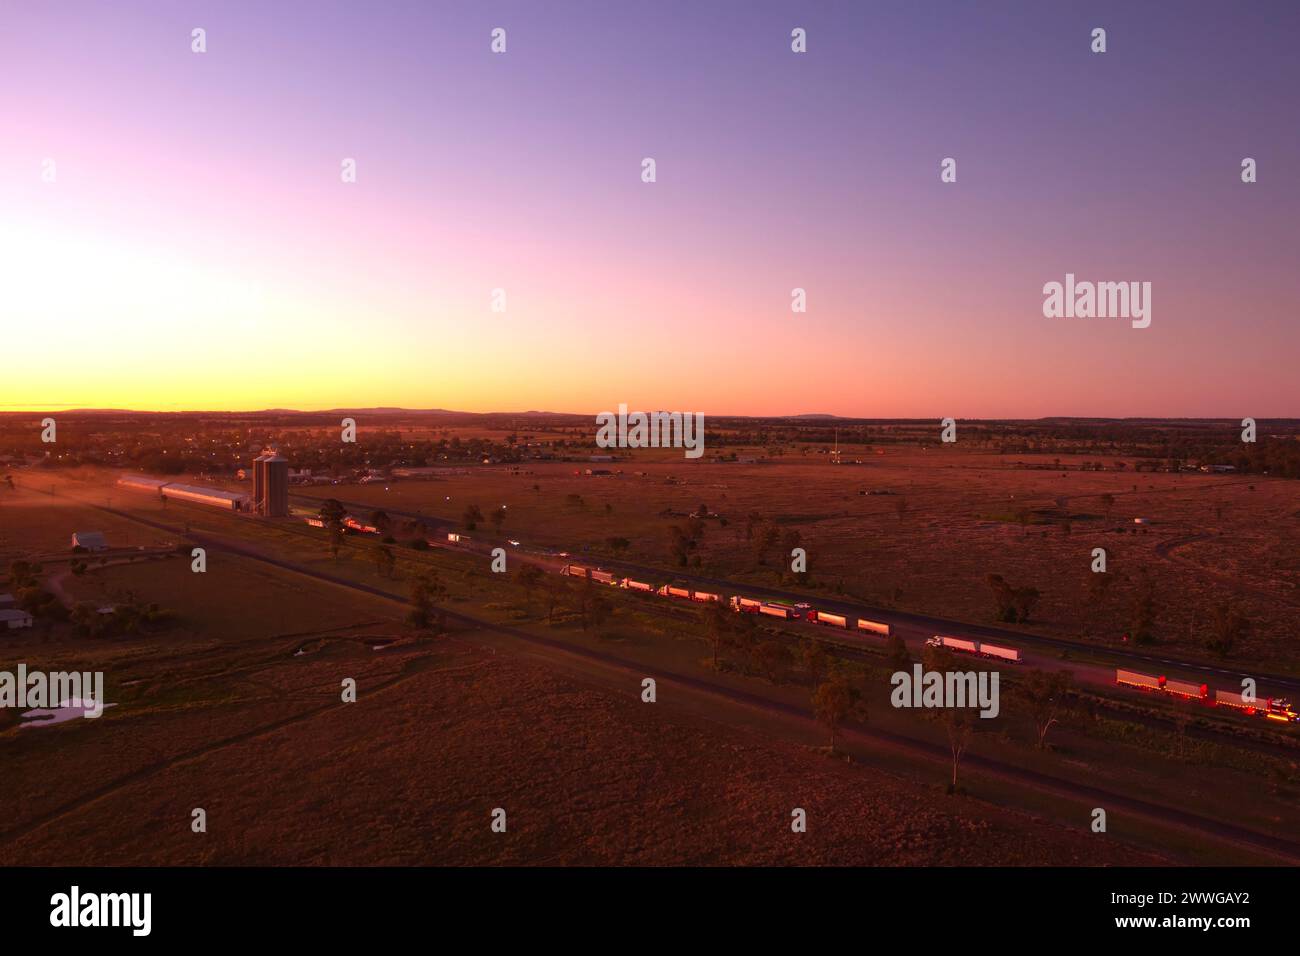 Aérien du coucher du soleil au-dessus de camions livrant du grain de blé au silo de Wallumbilla Queensland Australie Banque D'Images